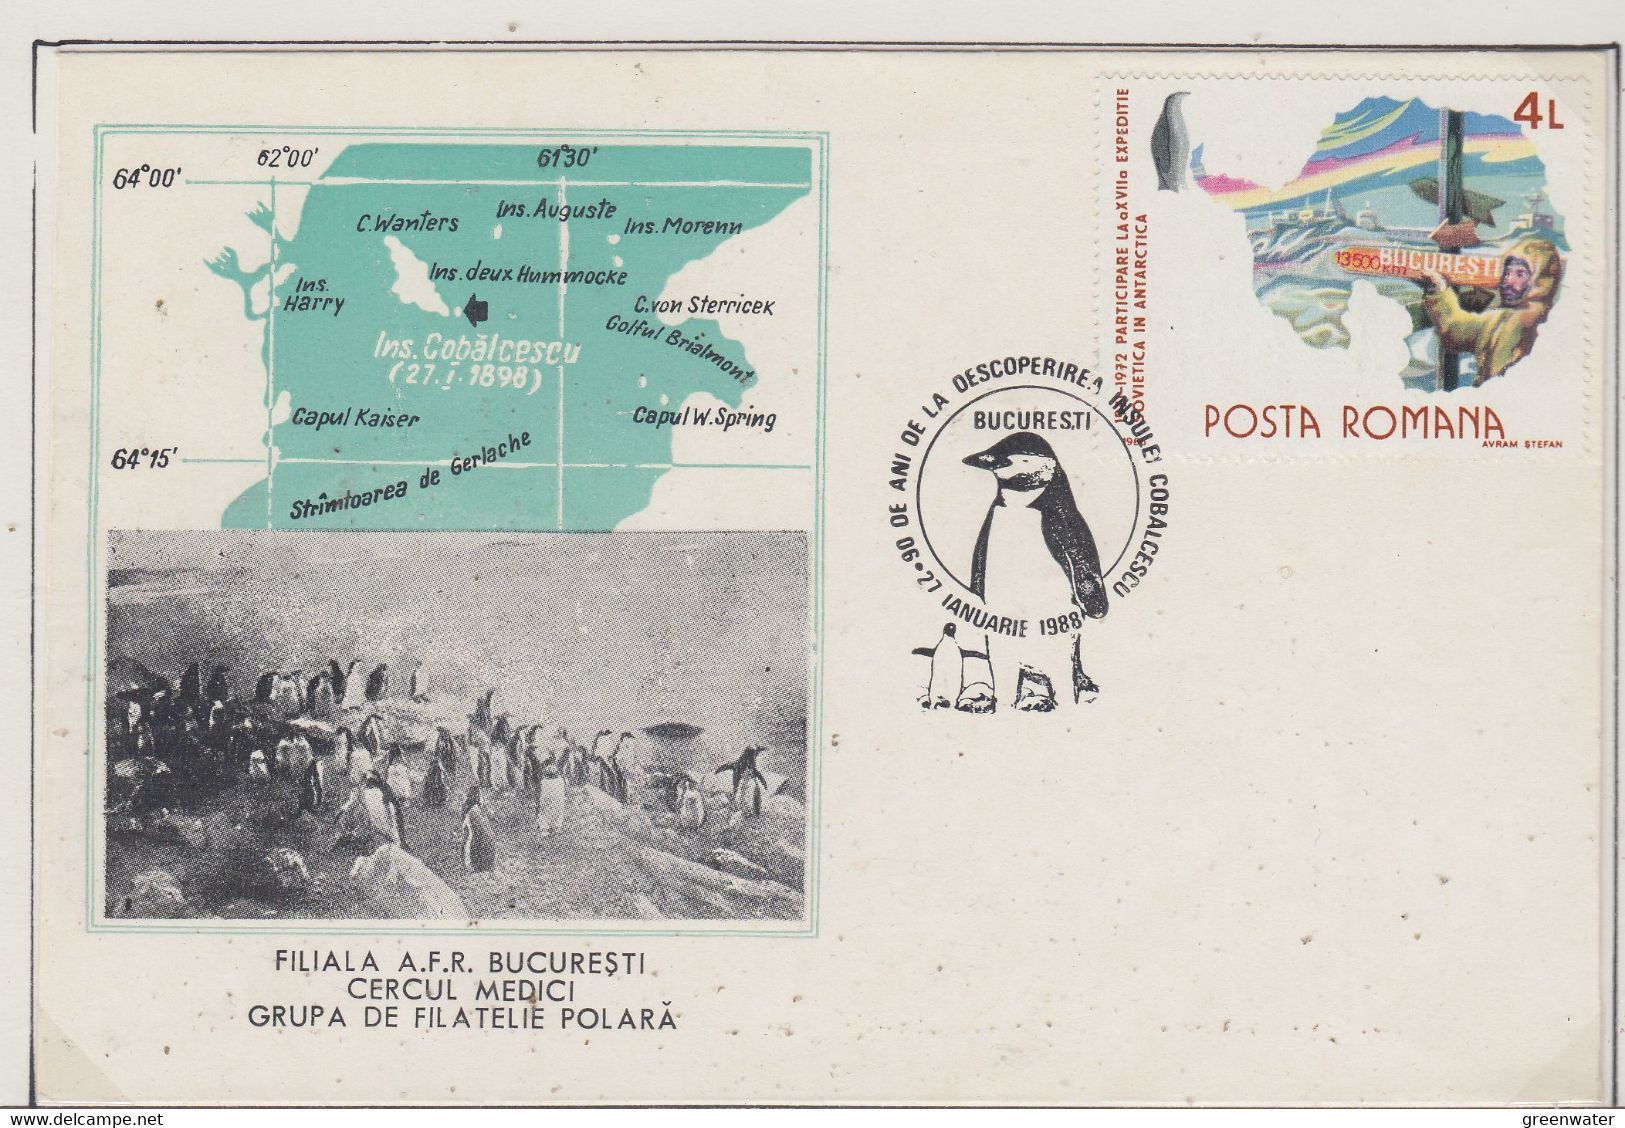 Romania  Antarctica  Cover Ca With Penguin Ca 27.1.1988 (XA167A) - Faune Antarctique